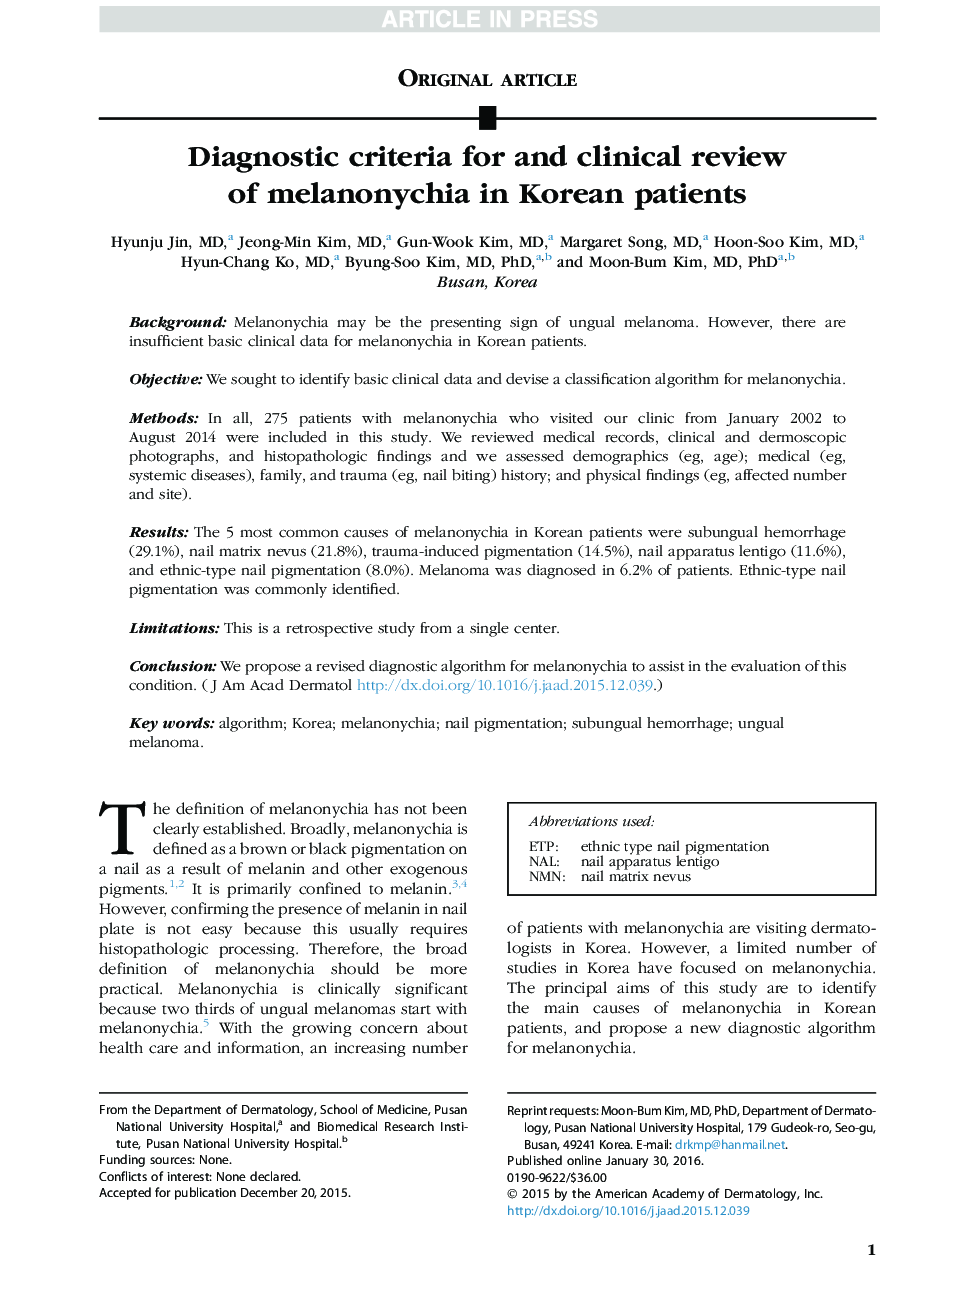 معیارهای تشخیصی و بررسی بالینی ملانونشیا در بیماران کره ای 